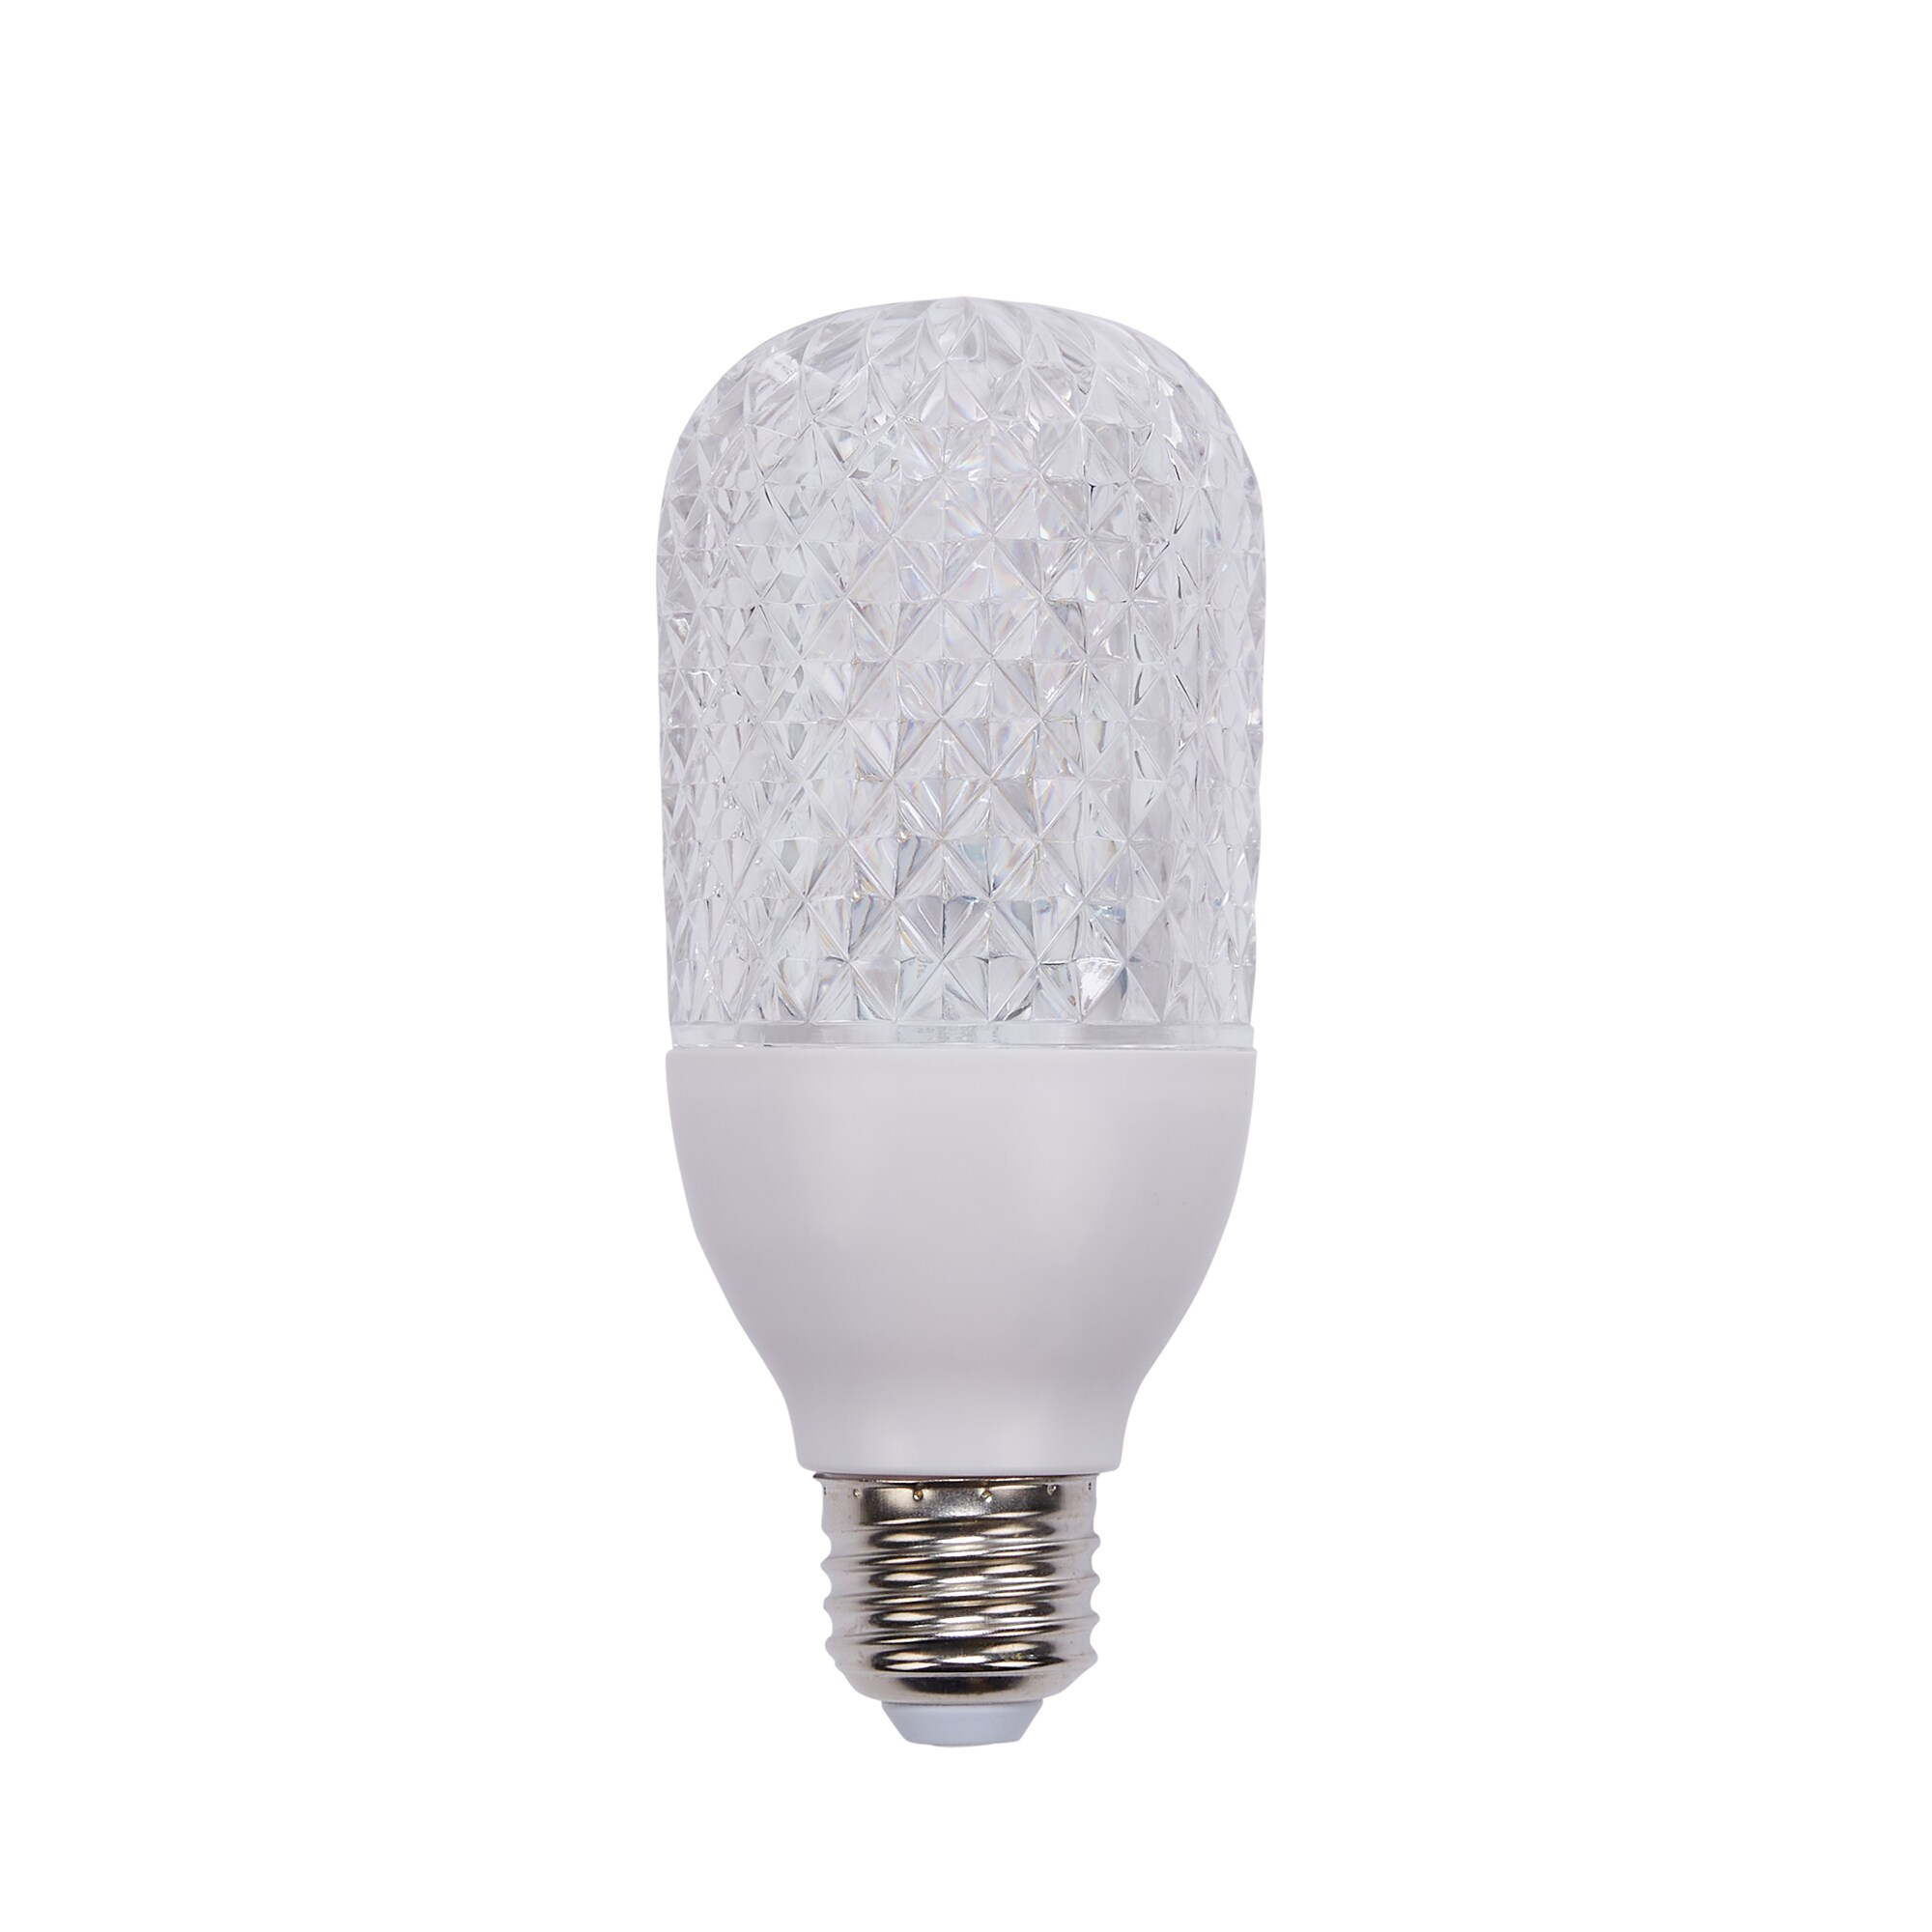 Gemmy Lightshow Sparkle White LED String Light Bulbs at